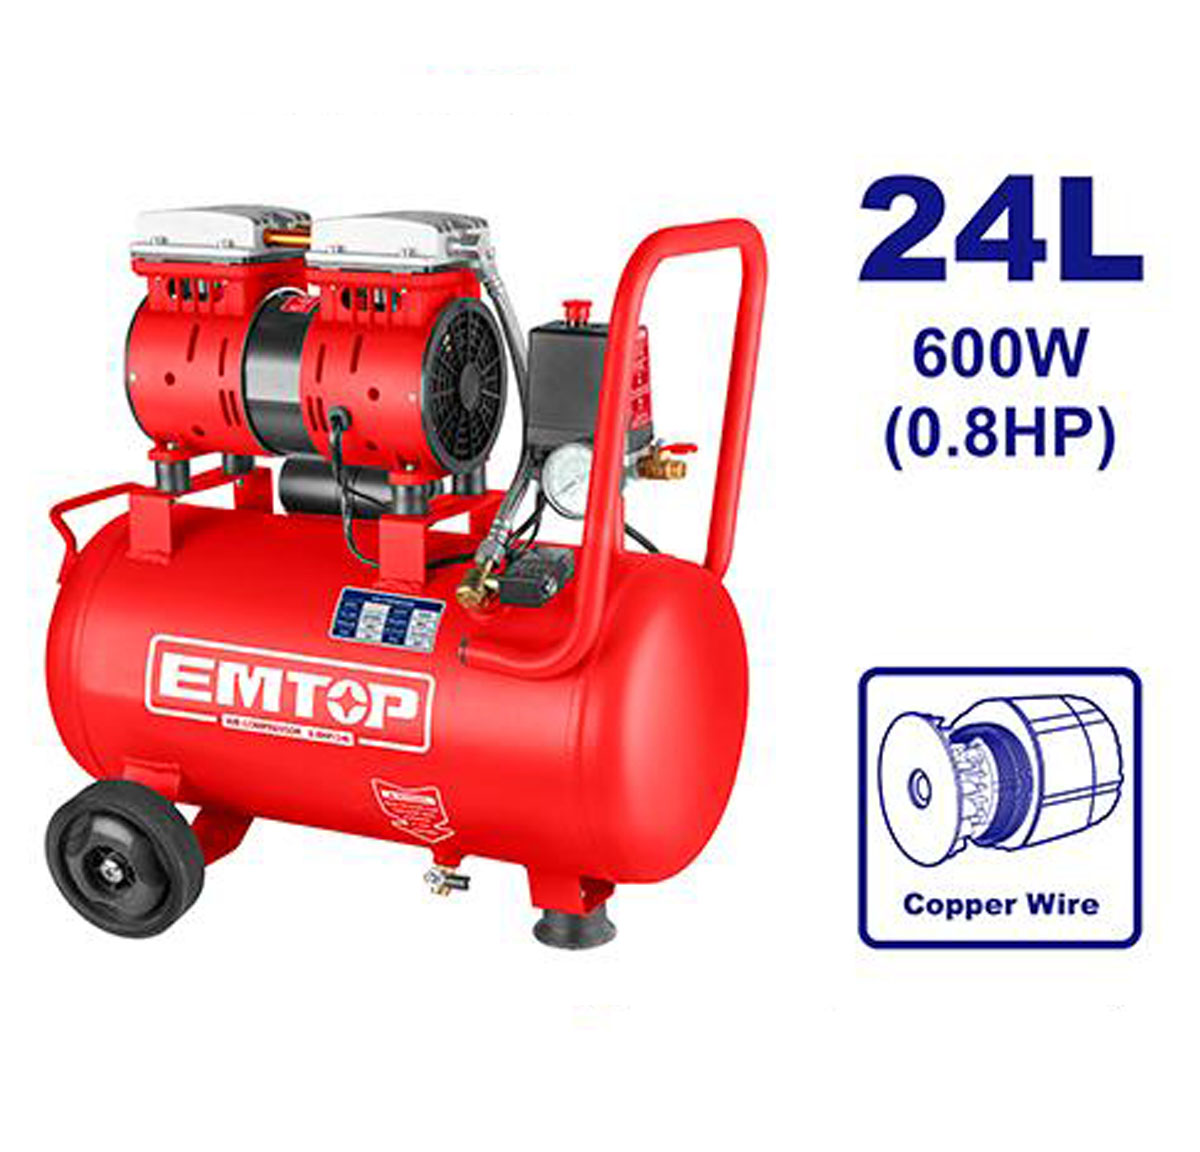 EMTOP Air compressor EACPS08242